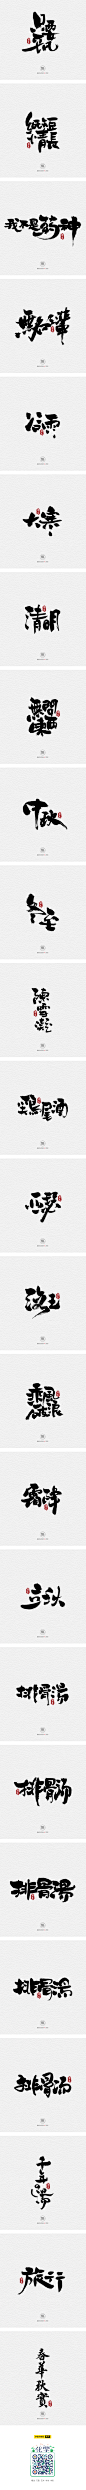 12.10一组手写字-字体传奇网-中国首个字体品牌设计师交流网